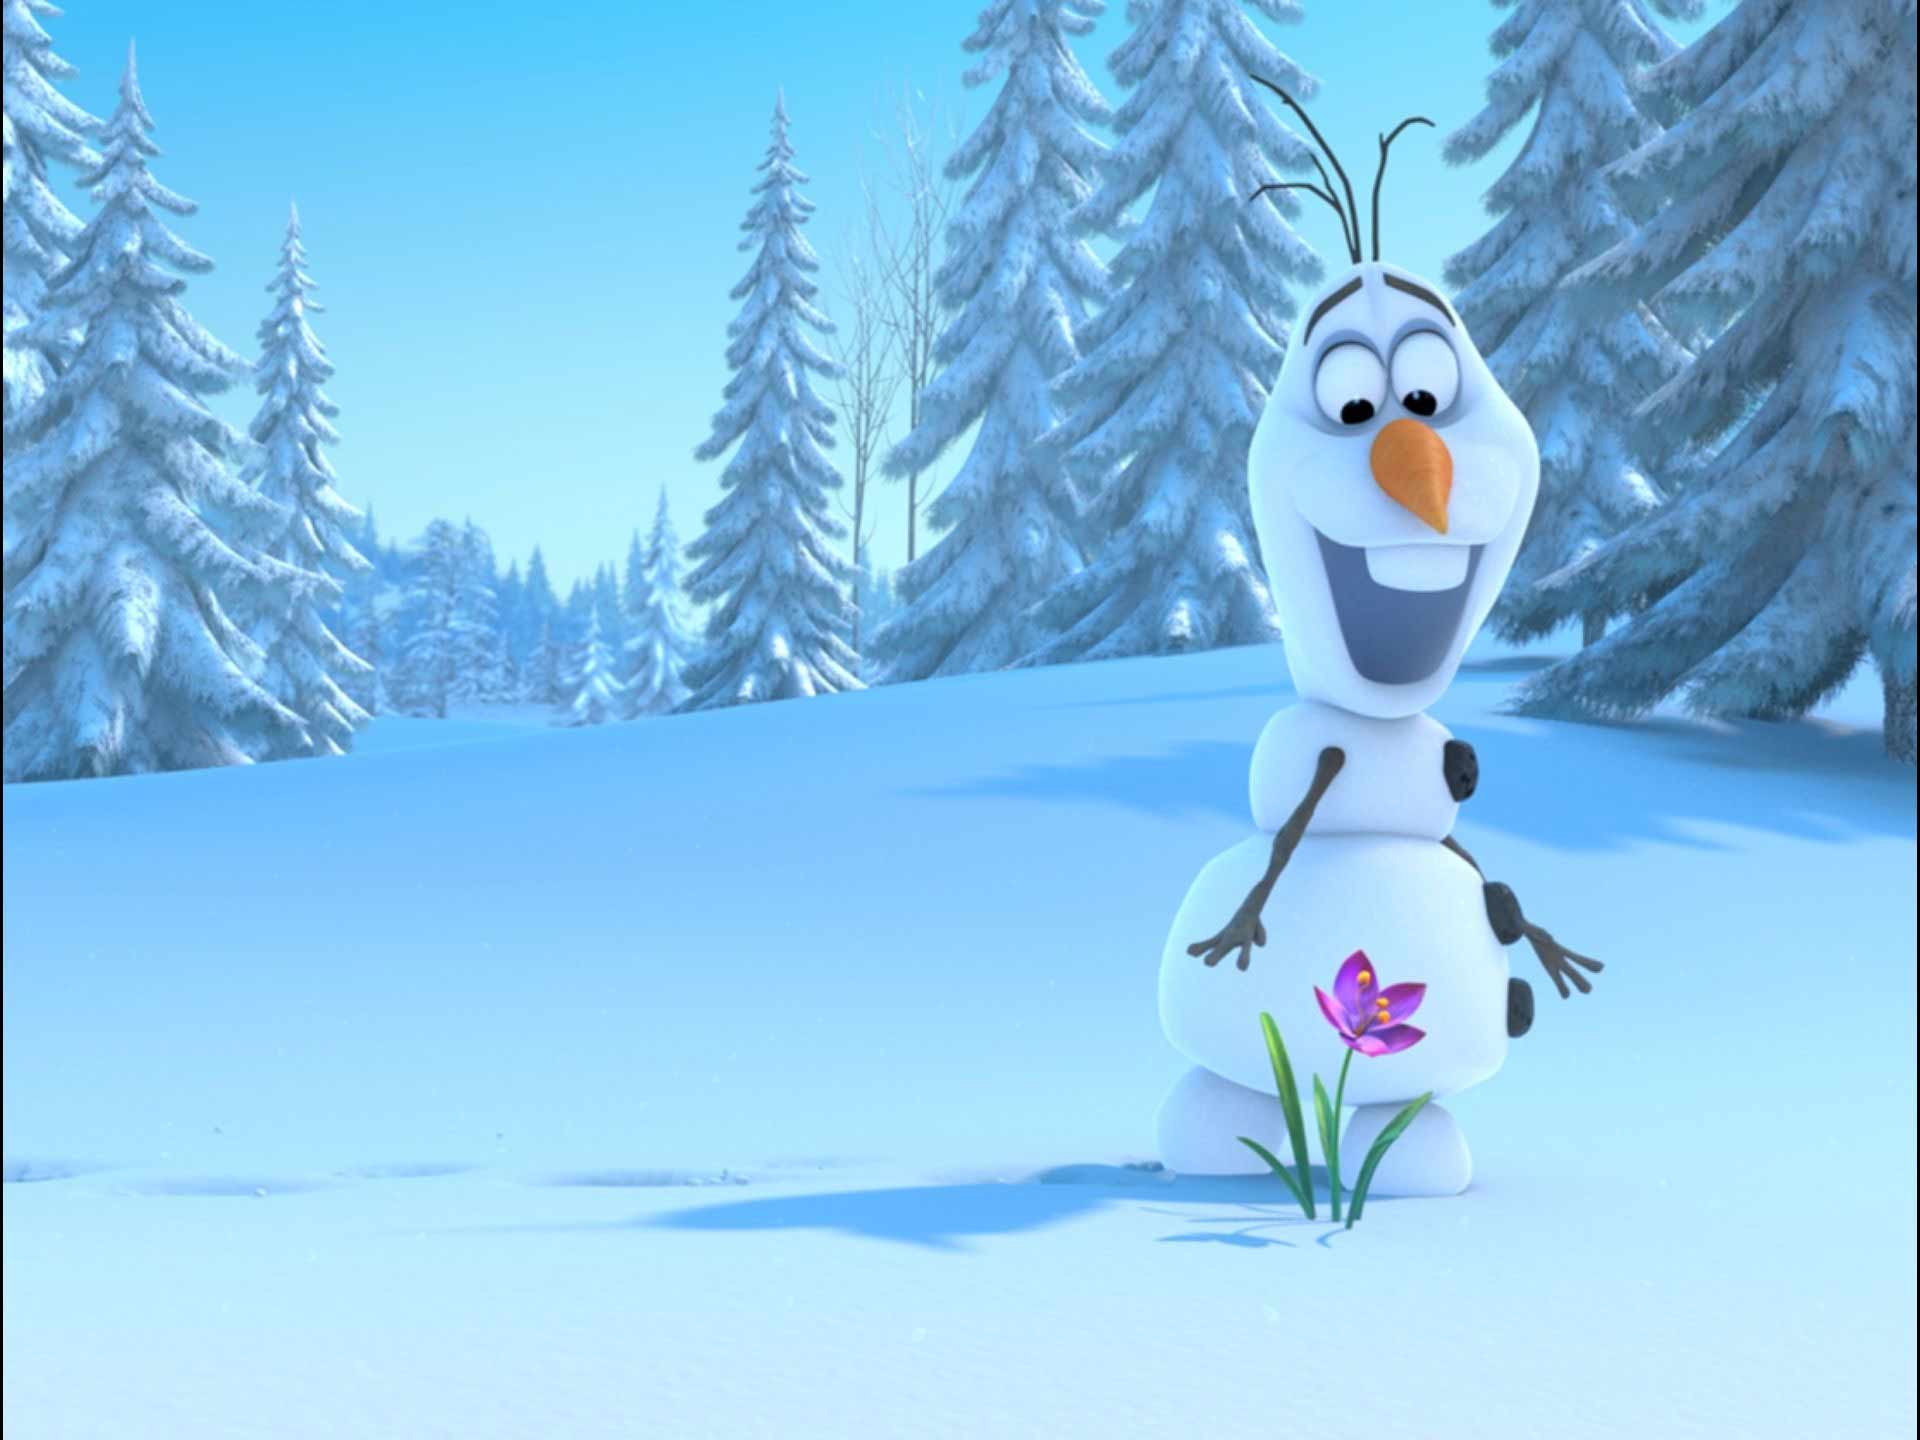 Disney Frozen Wallpapers amp Desktop Backgrounds Frozen